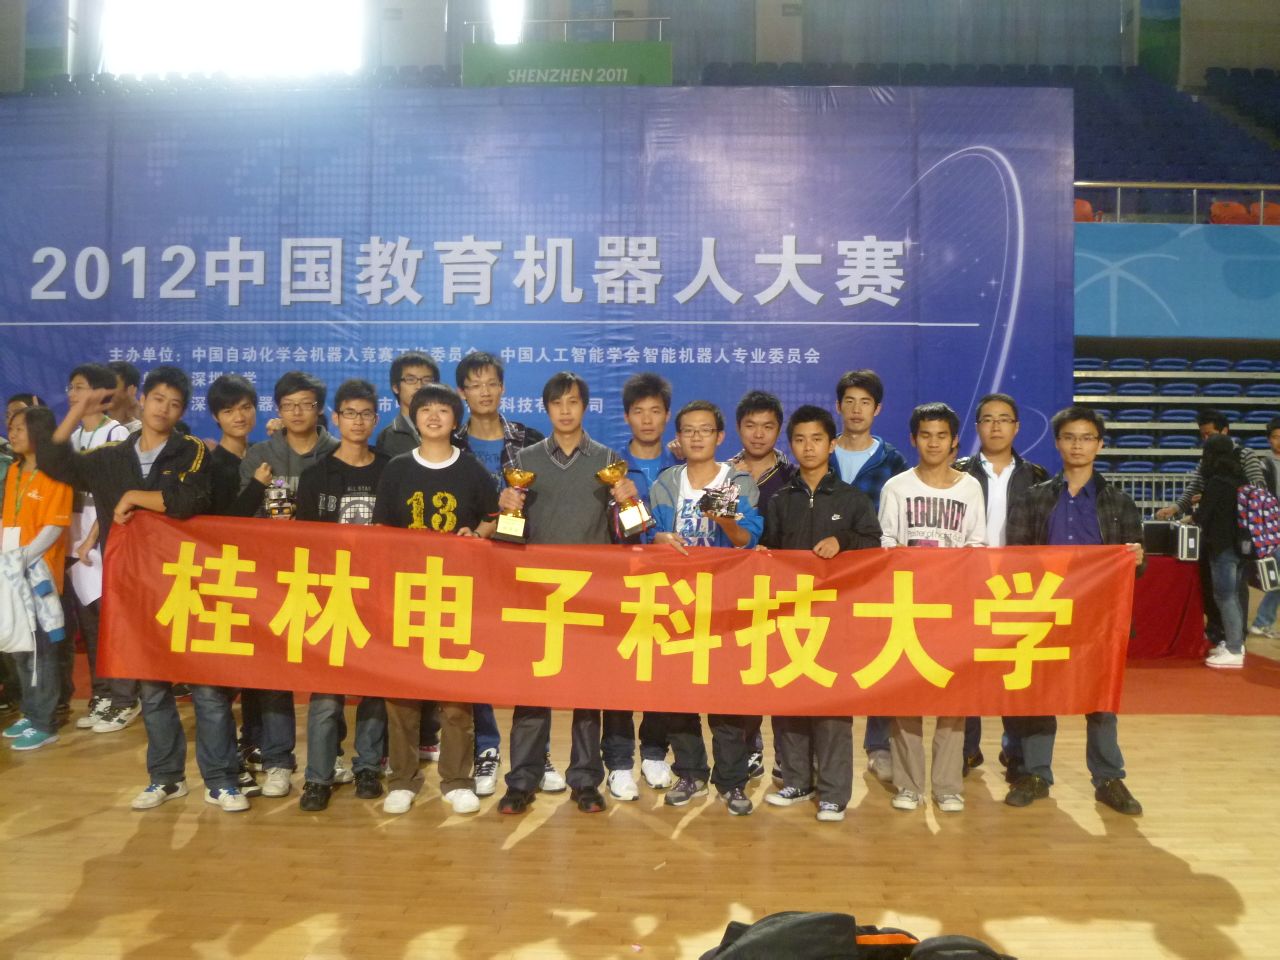 桂林電子科技大學機電工程學院